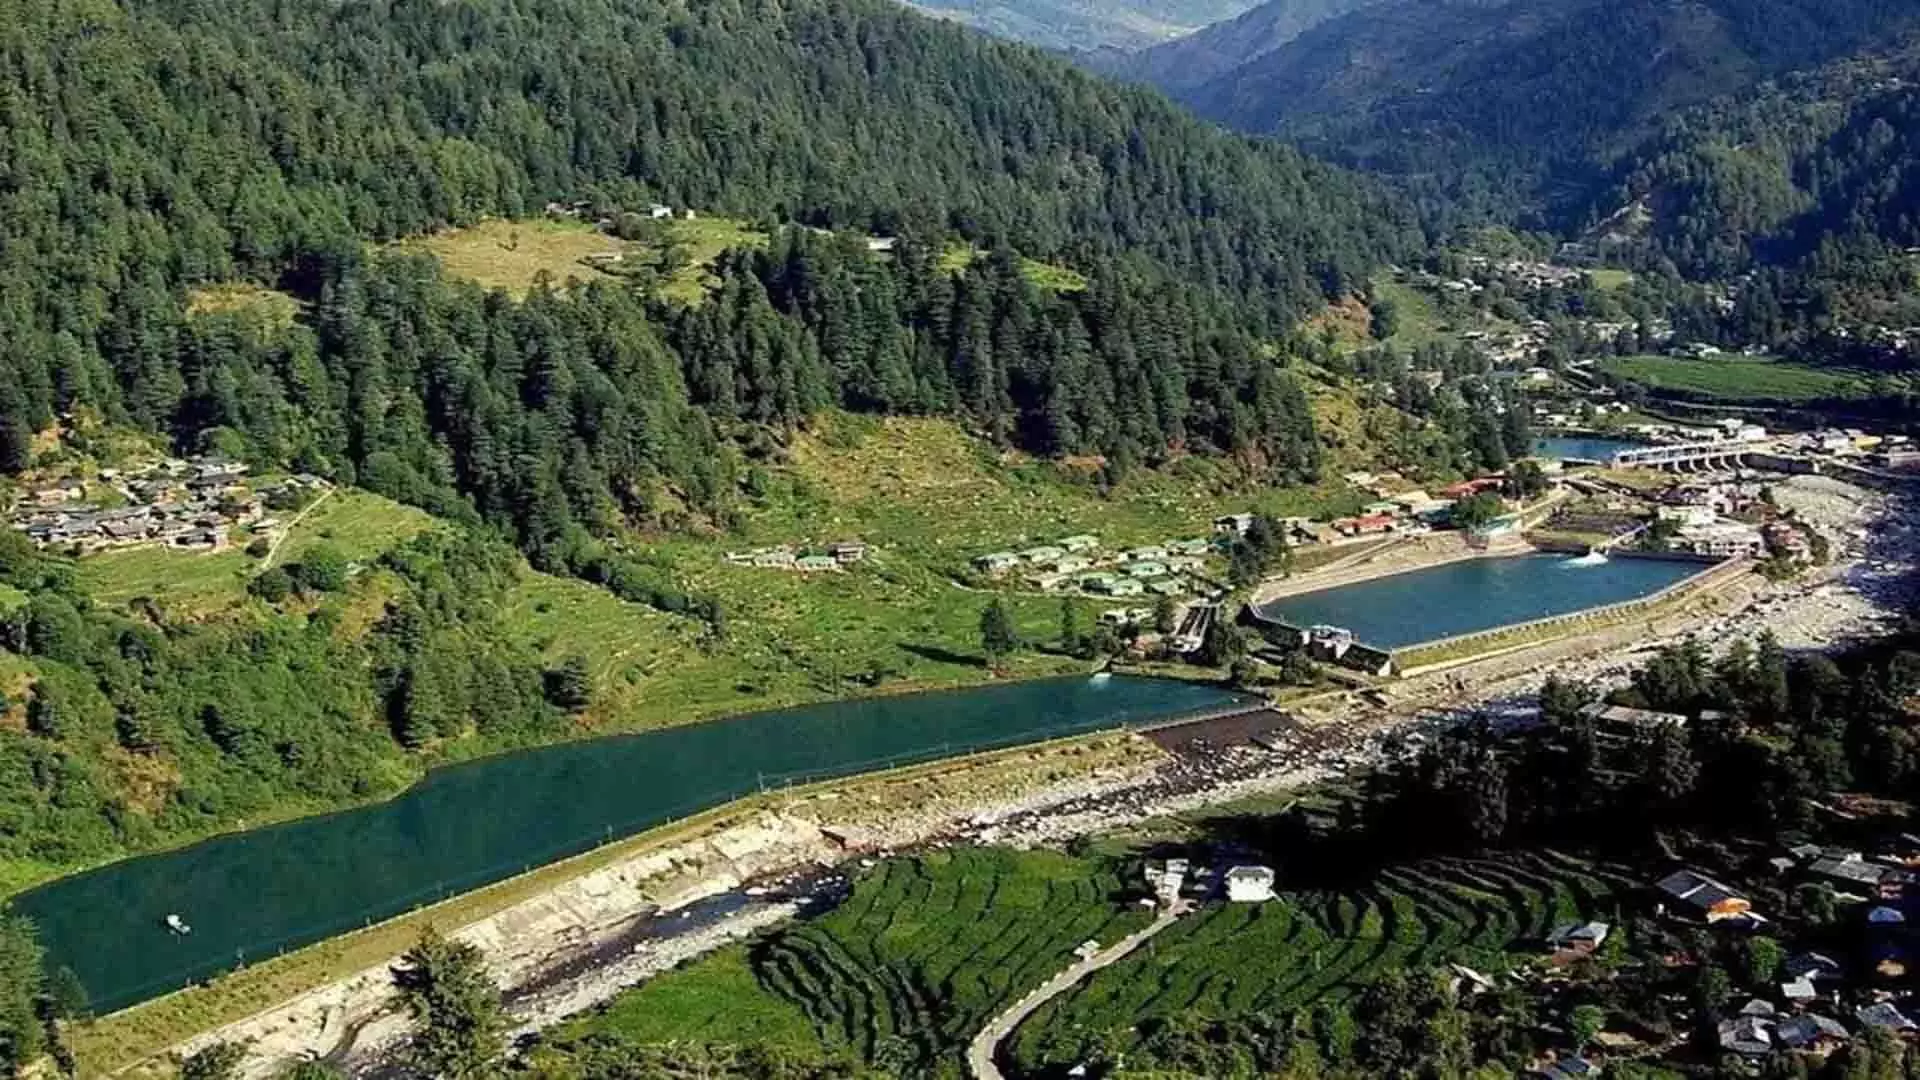 शानन जलविद्युत परियोजना: केंद्र ने पंजाब और हिमाचल से यथास्थिति बनाए रखने को कहा